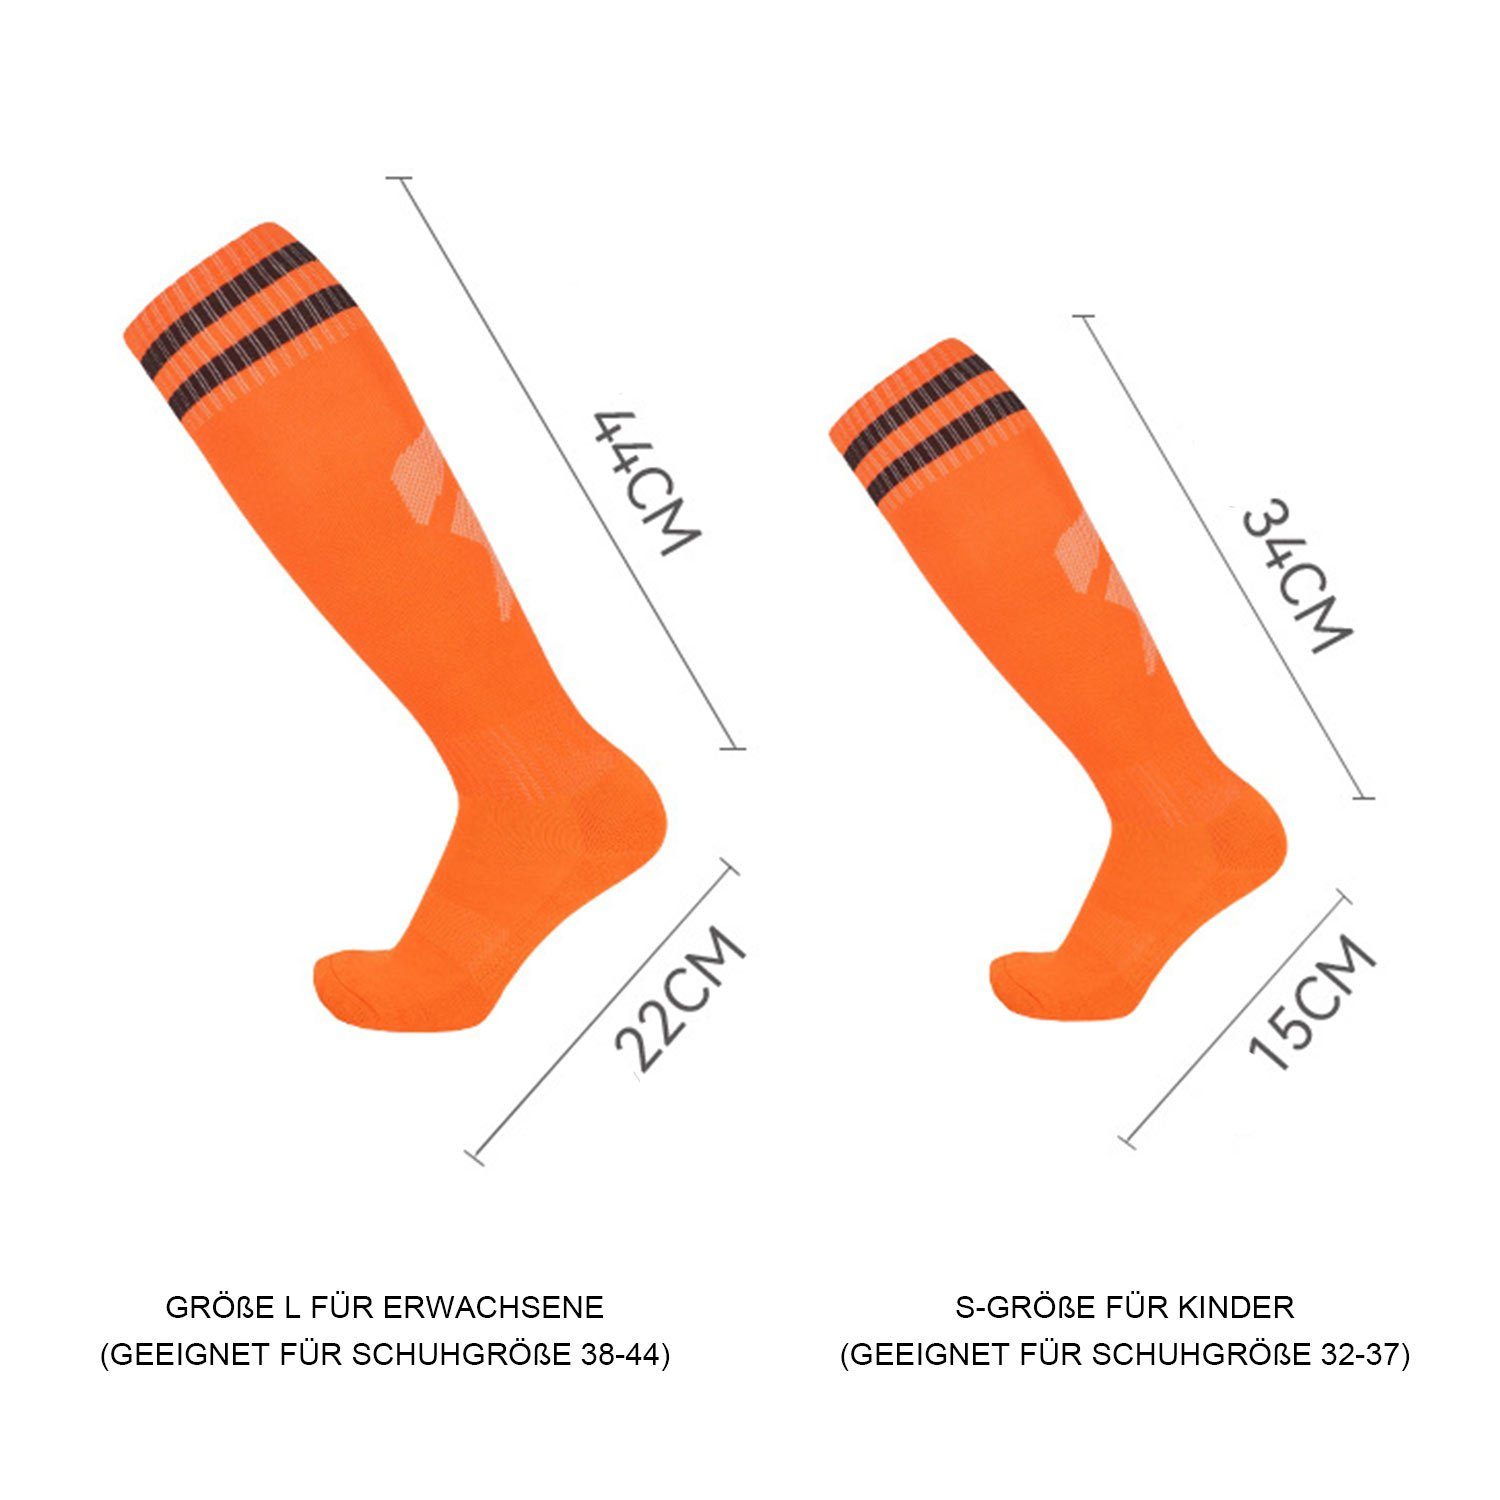 und Kinderfußball Neutral Socken Socken Training Bewegung Fadenfäden Blau Sportsocken für Fußballtraining, -Socken MAGICSHE Erwachsene Laufen